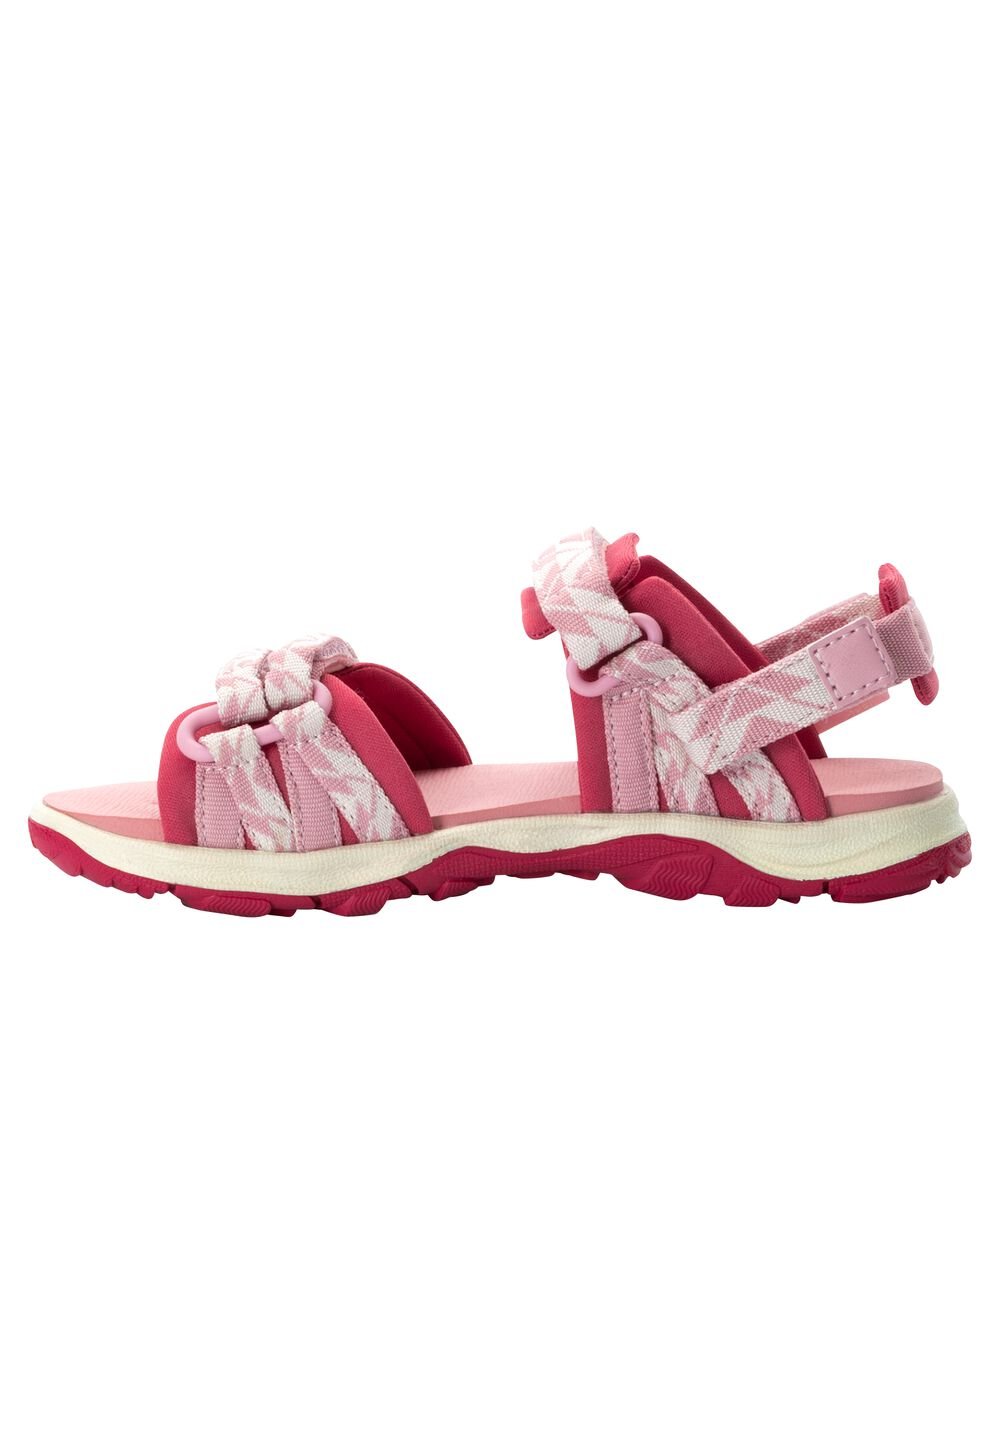 Jack Wolfskin 2 IN 1 Sandal Kids Kinderen sandalen 32 soft pink soft pink